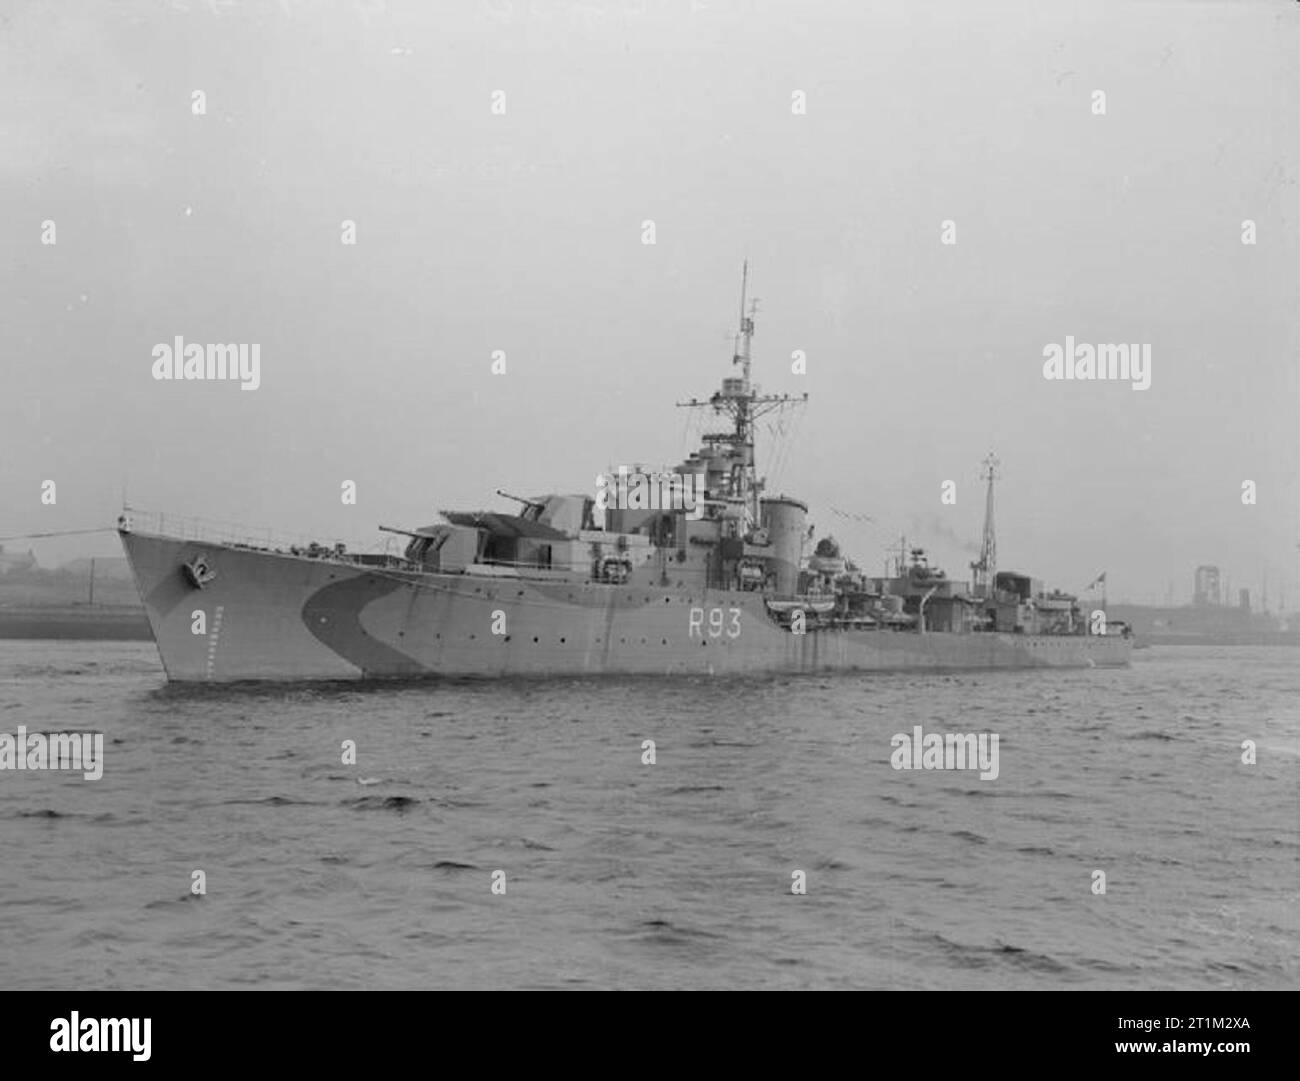 Britischer Zerstörer HMS Vigilant (R93) auf dem Fluss Tyne. Stockfoto